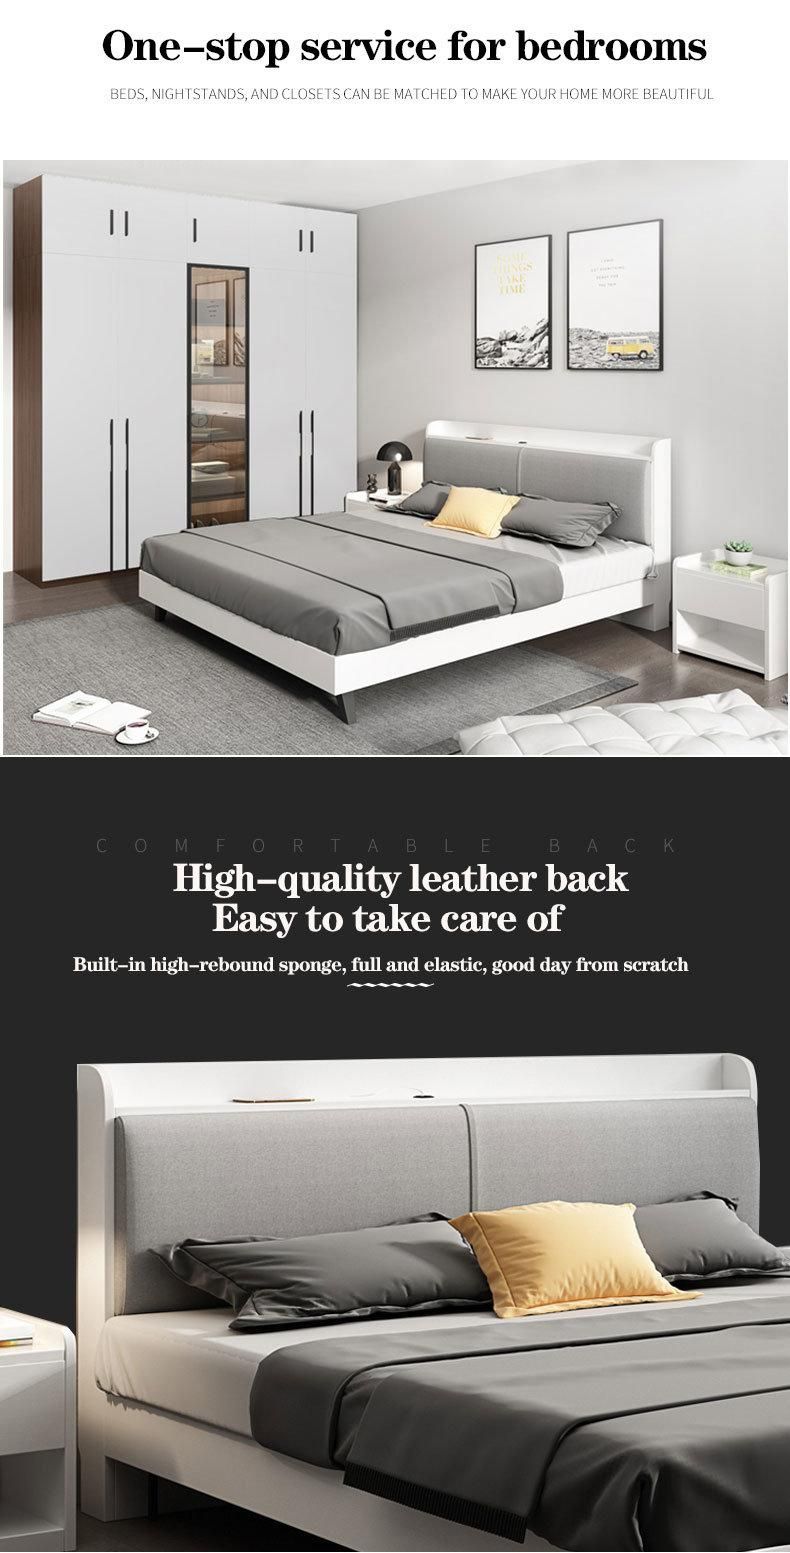 2020 Hot Design Master Bedroom Furniture Sets Leather Bed for Home Hotel Use